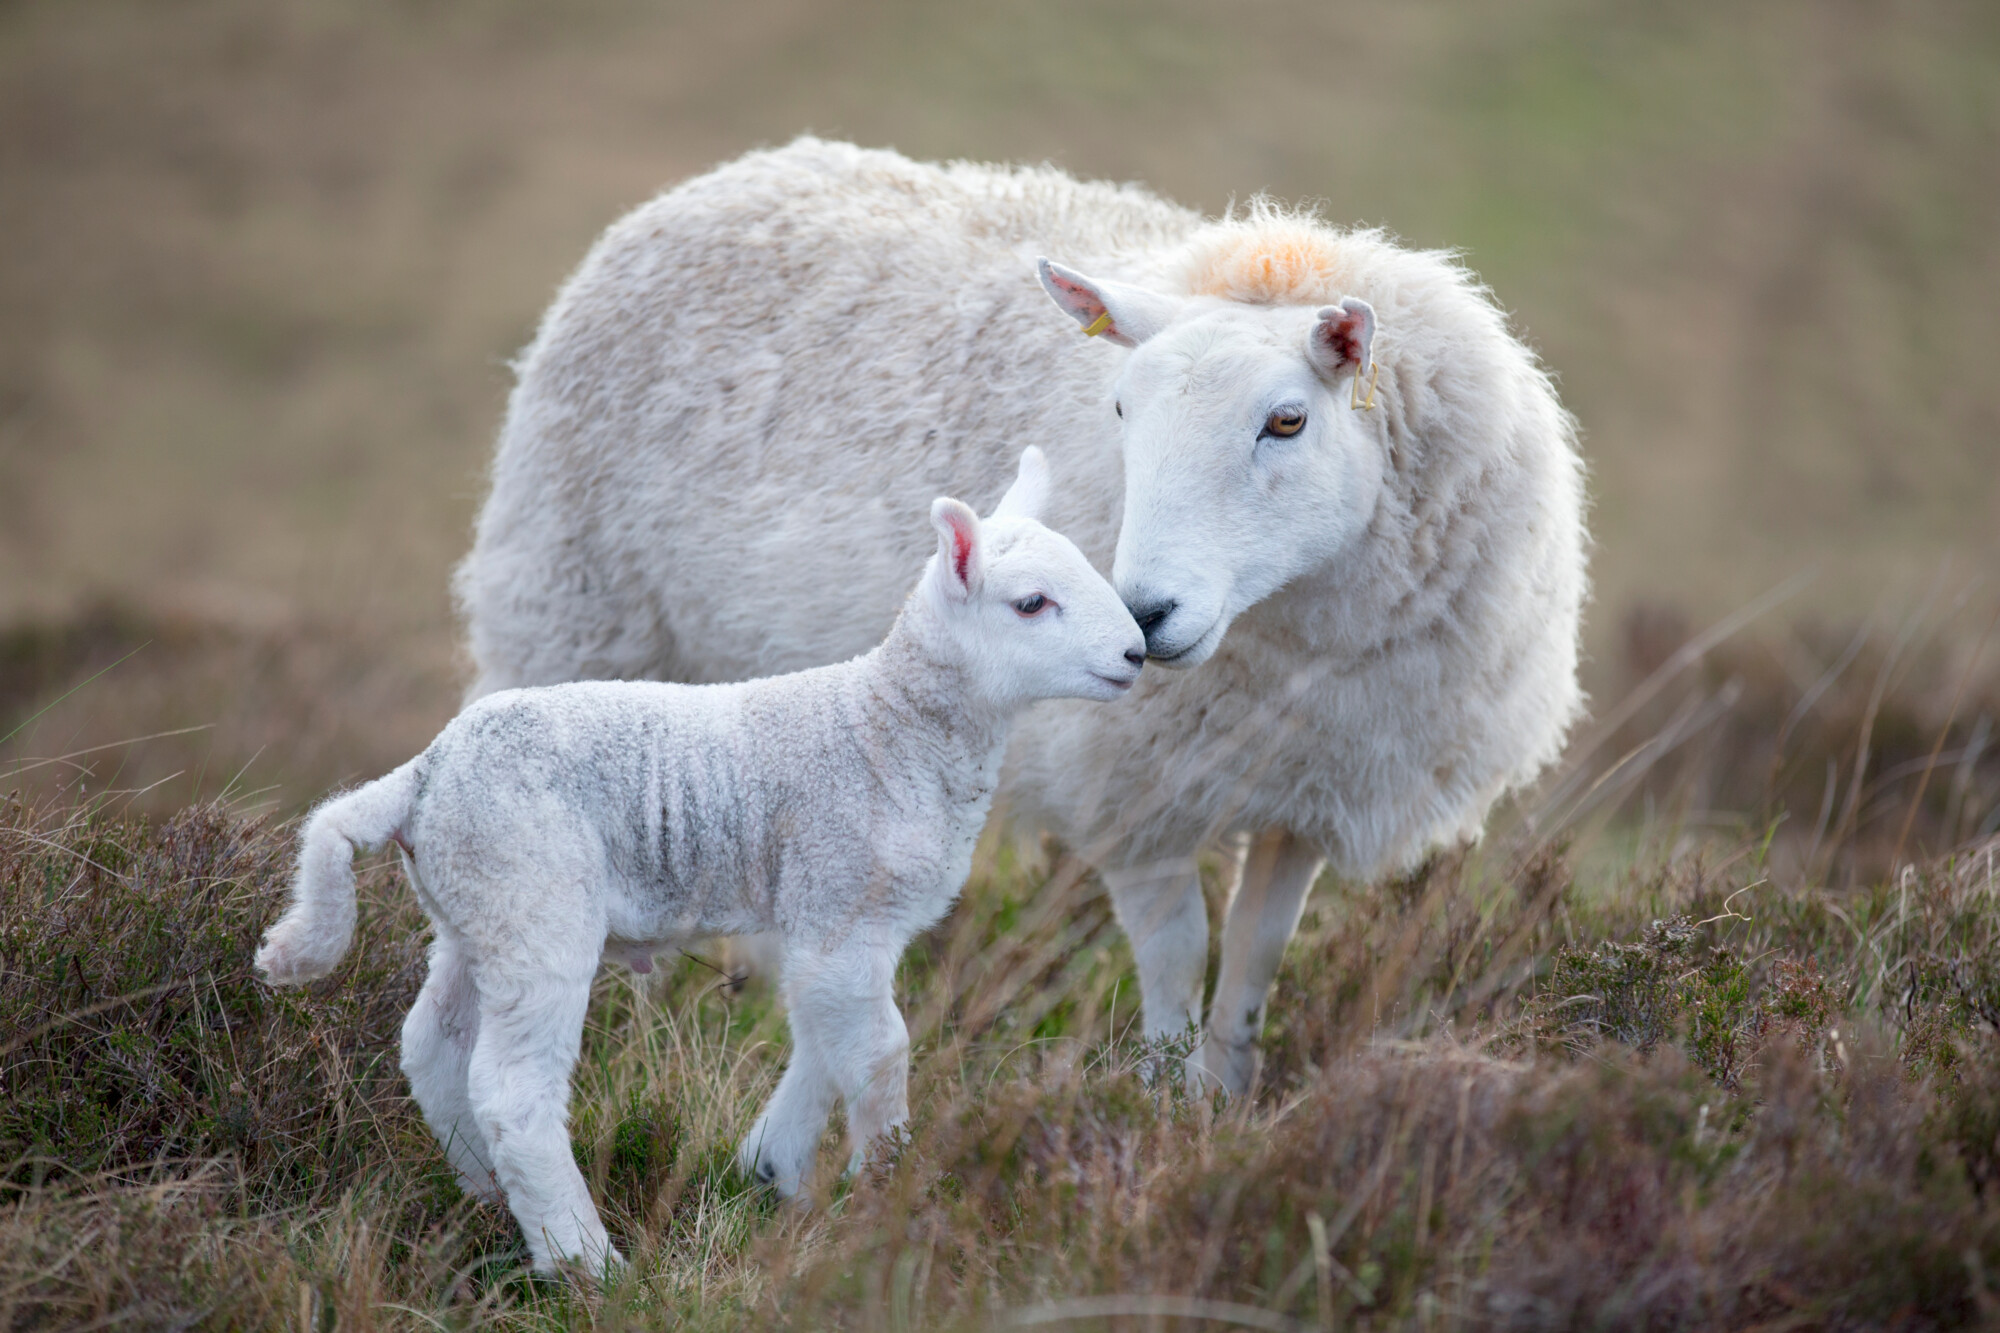 Love Lamb Week celebrates all things lamb